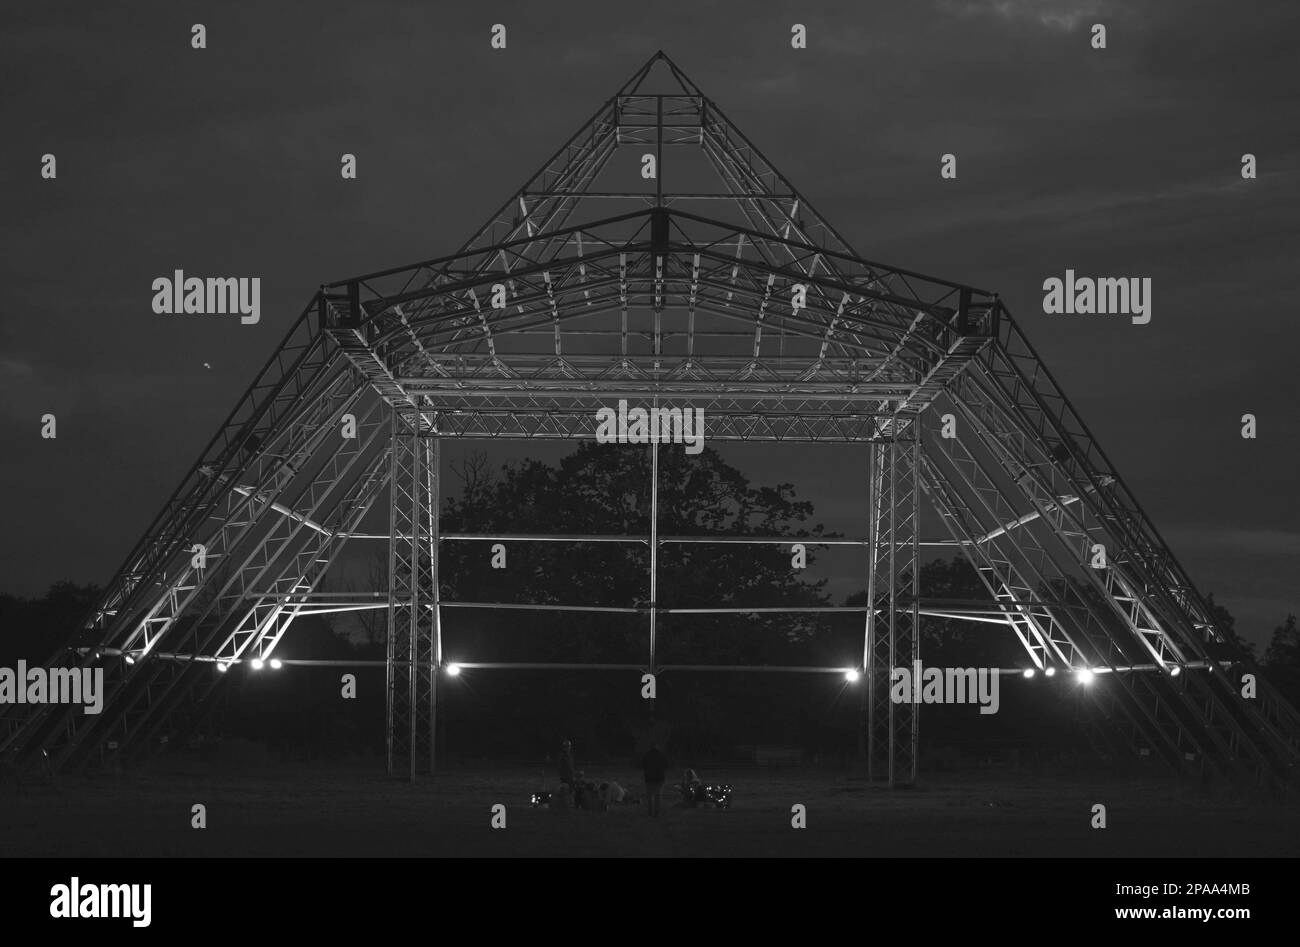 Die leere Pyramidenbühne in Worthy Farm, Pilton, Veranstaltungsort des Glastonbury Festivals, wird bei Nacht beleuchtet. Stockfoto